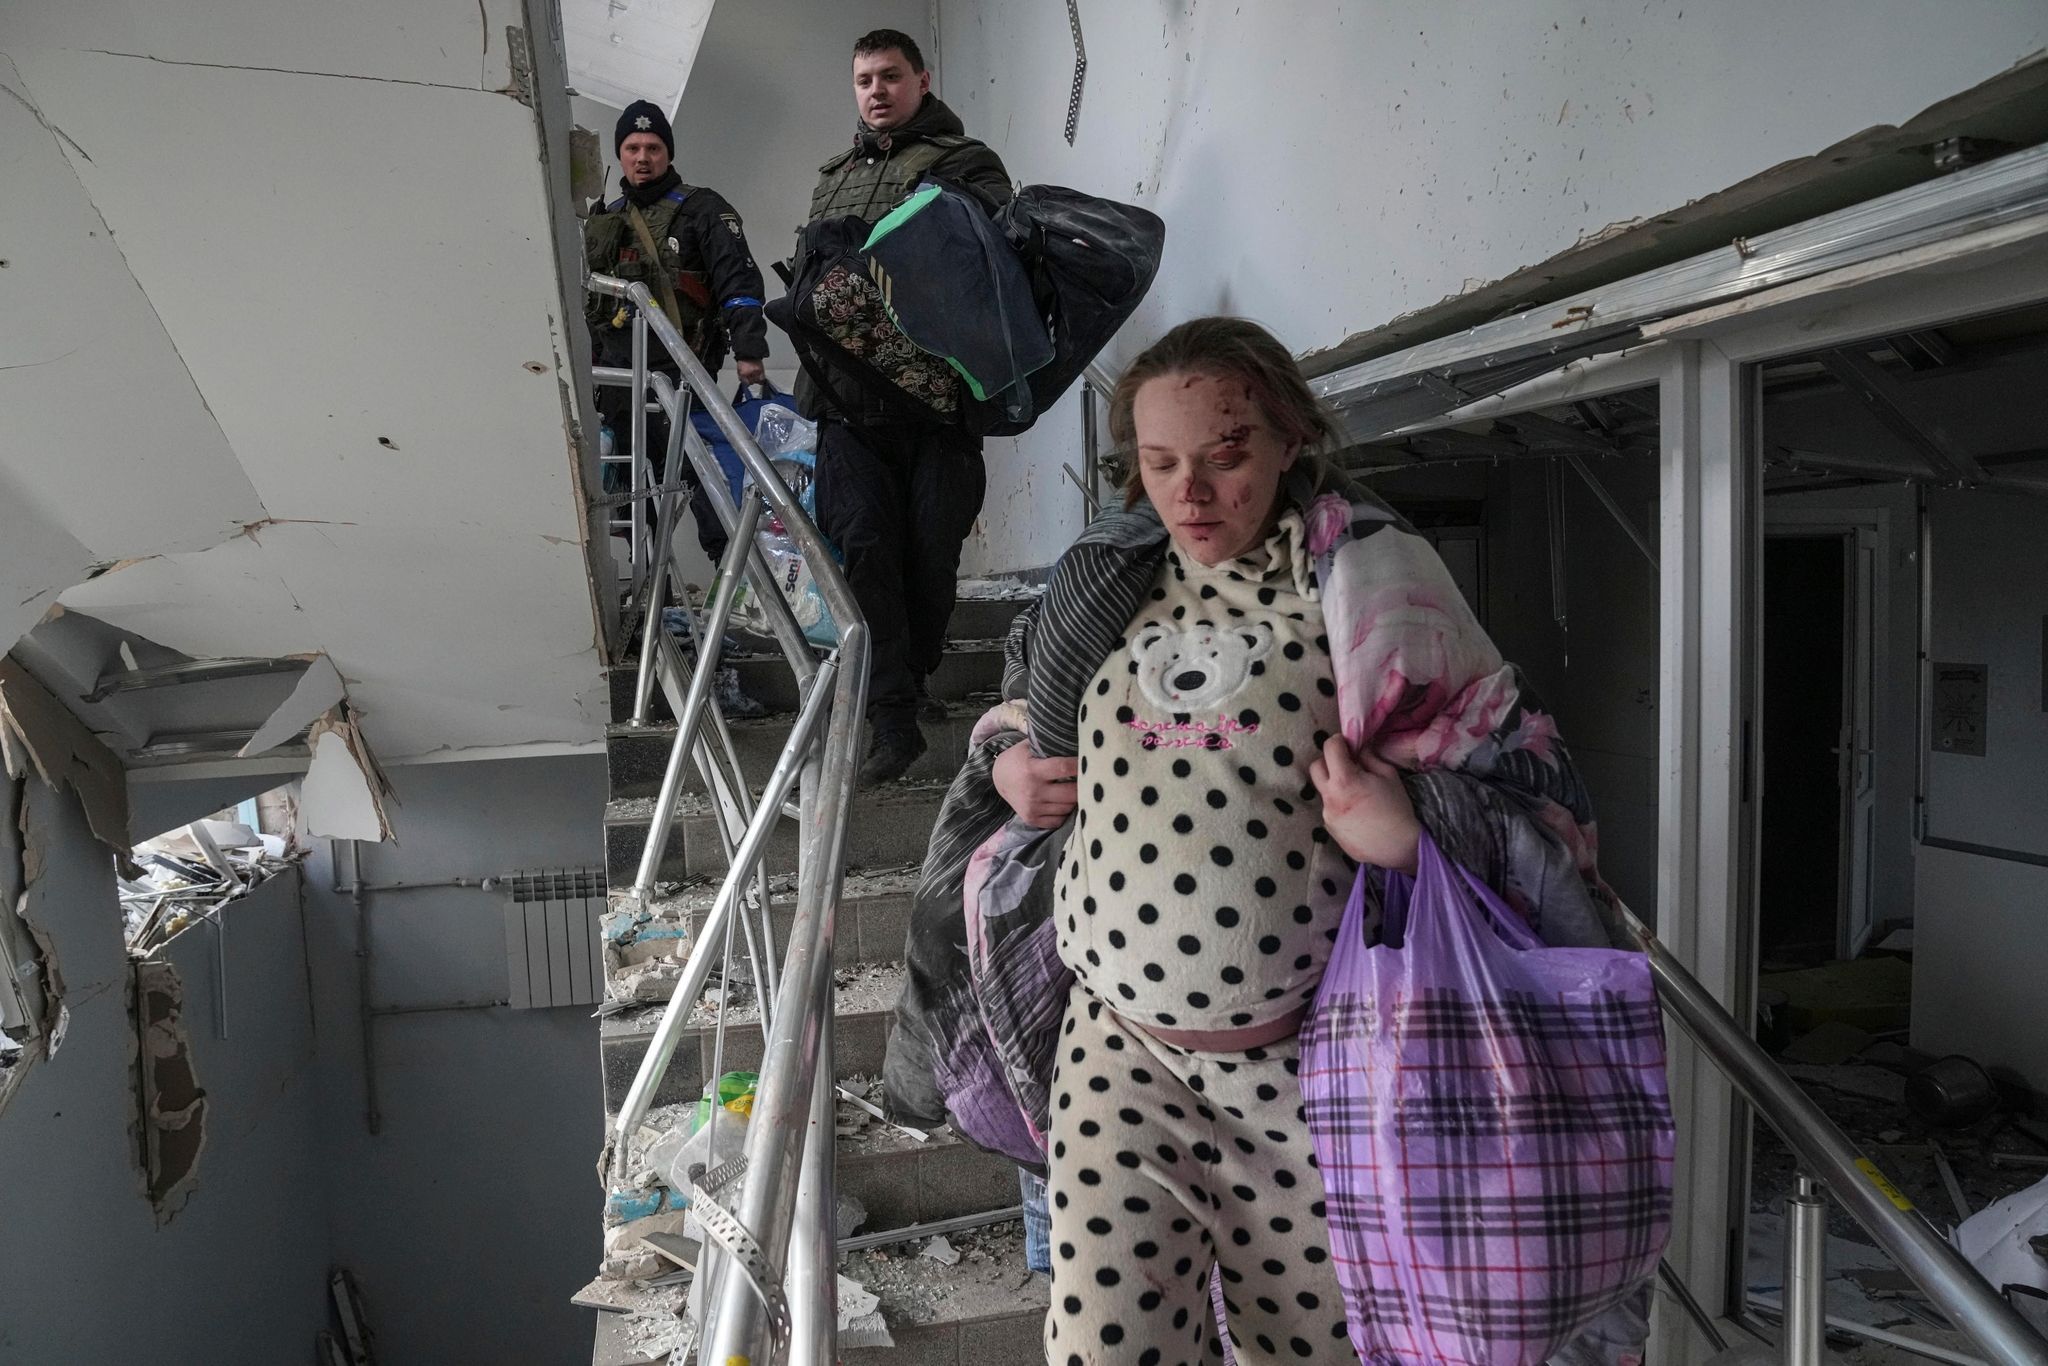 Eine verletzte schwangere Frau in einem beschädigten Treppenhaus: Nach ukrainischen Angaben stammt das Bild aus dem beschossenen Krankenhaus in Mariupol. Foto: dpa/Maloletka/AP